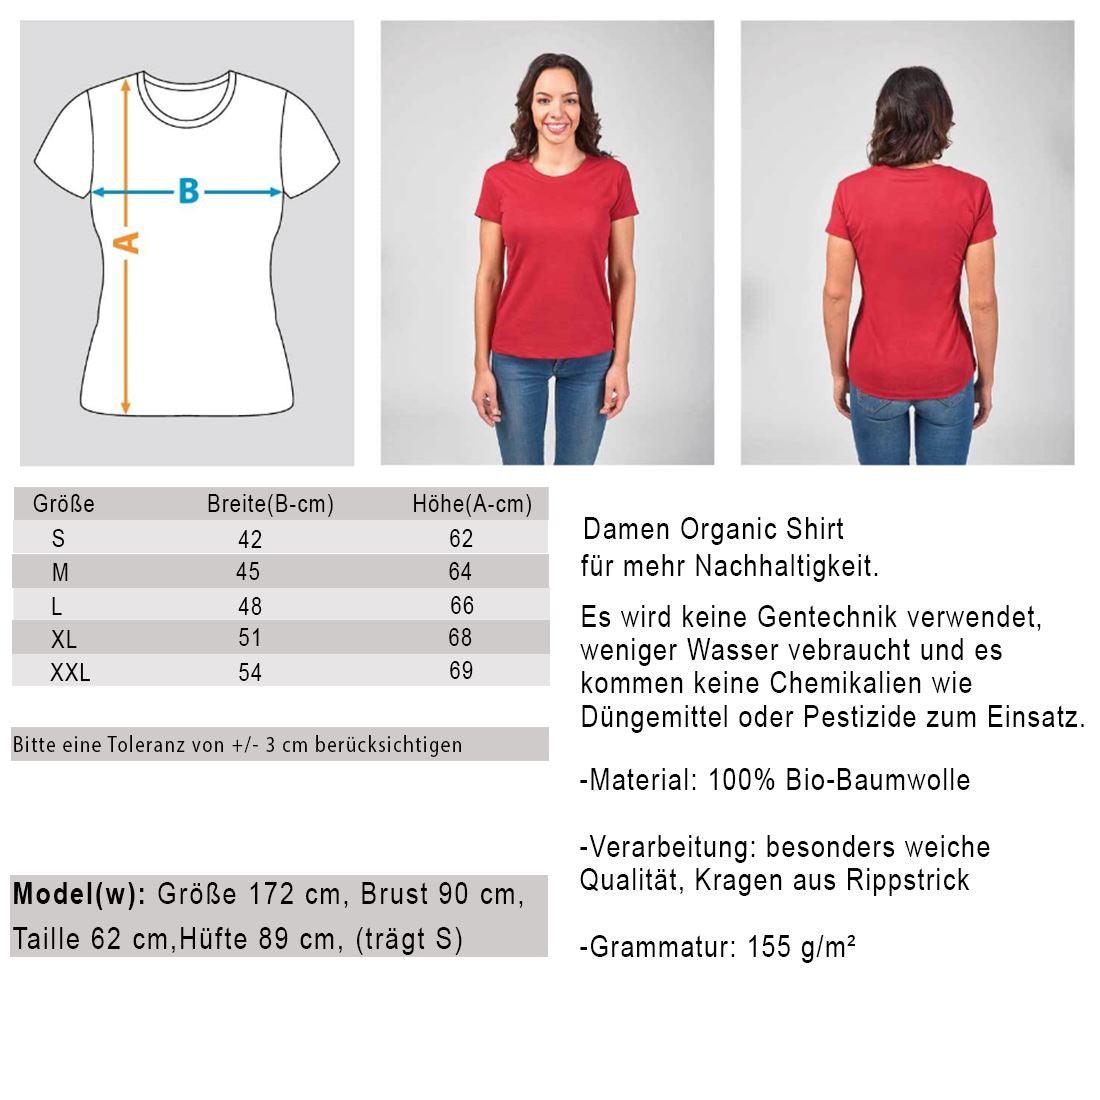 Be The Voice of the voiceless - Damen Organic Shirt Stella Jazzer T-Shirt ST/ST Shirtee 